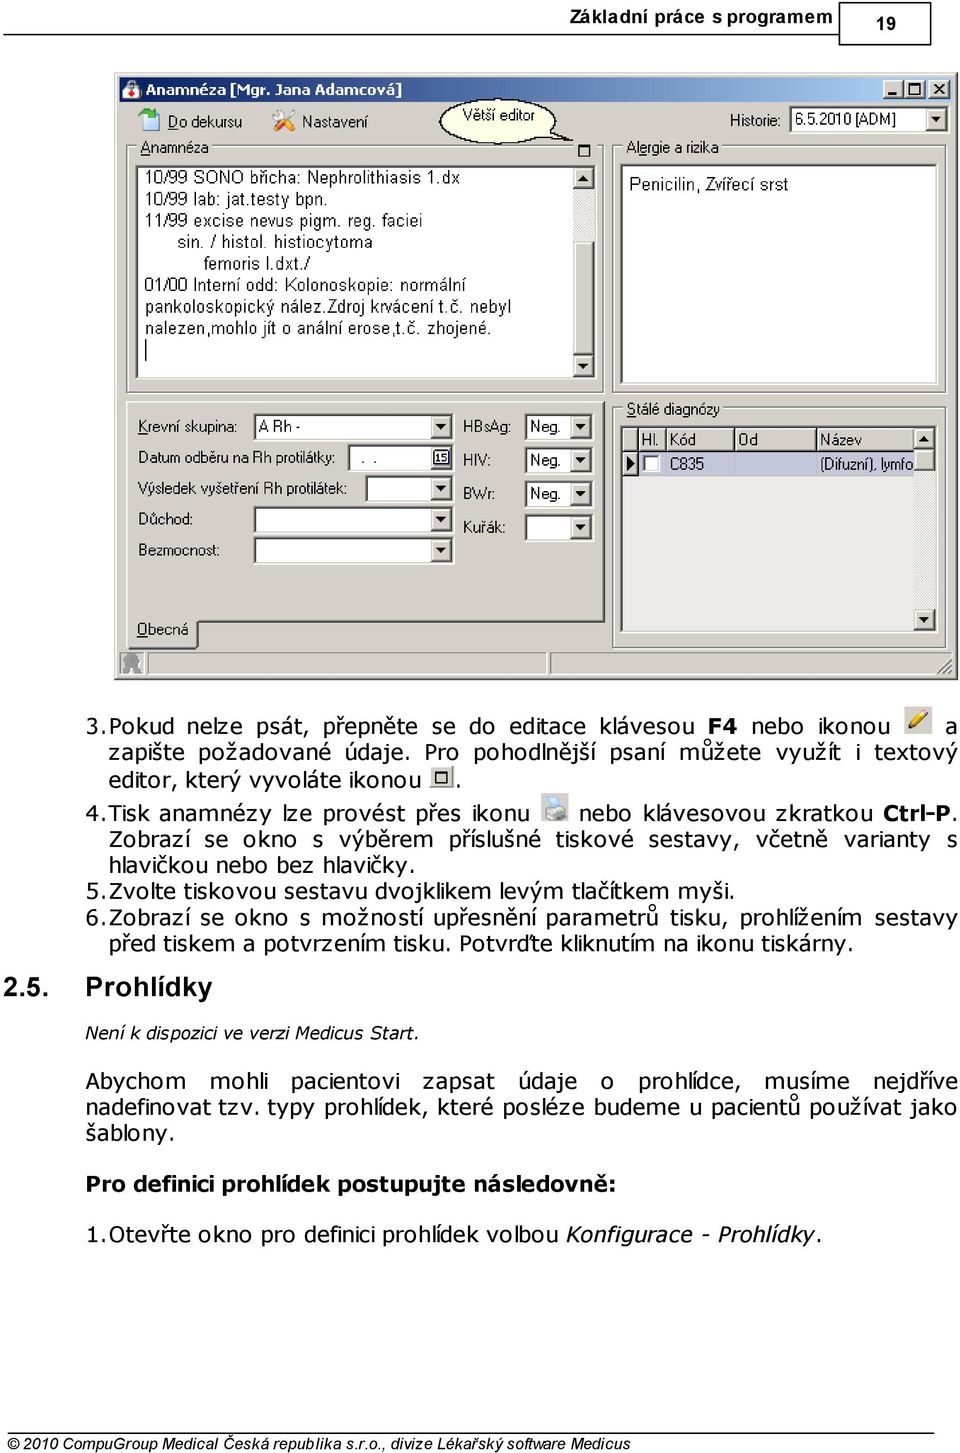 Zobrazí se okno s výběrem příslušné tiskové sestavy, včetně varianty s hlavičkou nebo bez hlavičky. 5.Zvolte tiskovou sestavu dvojklikem levým tlačítkem myši. 6.